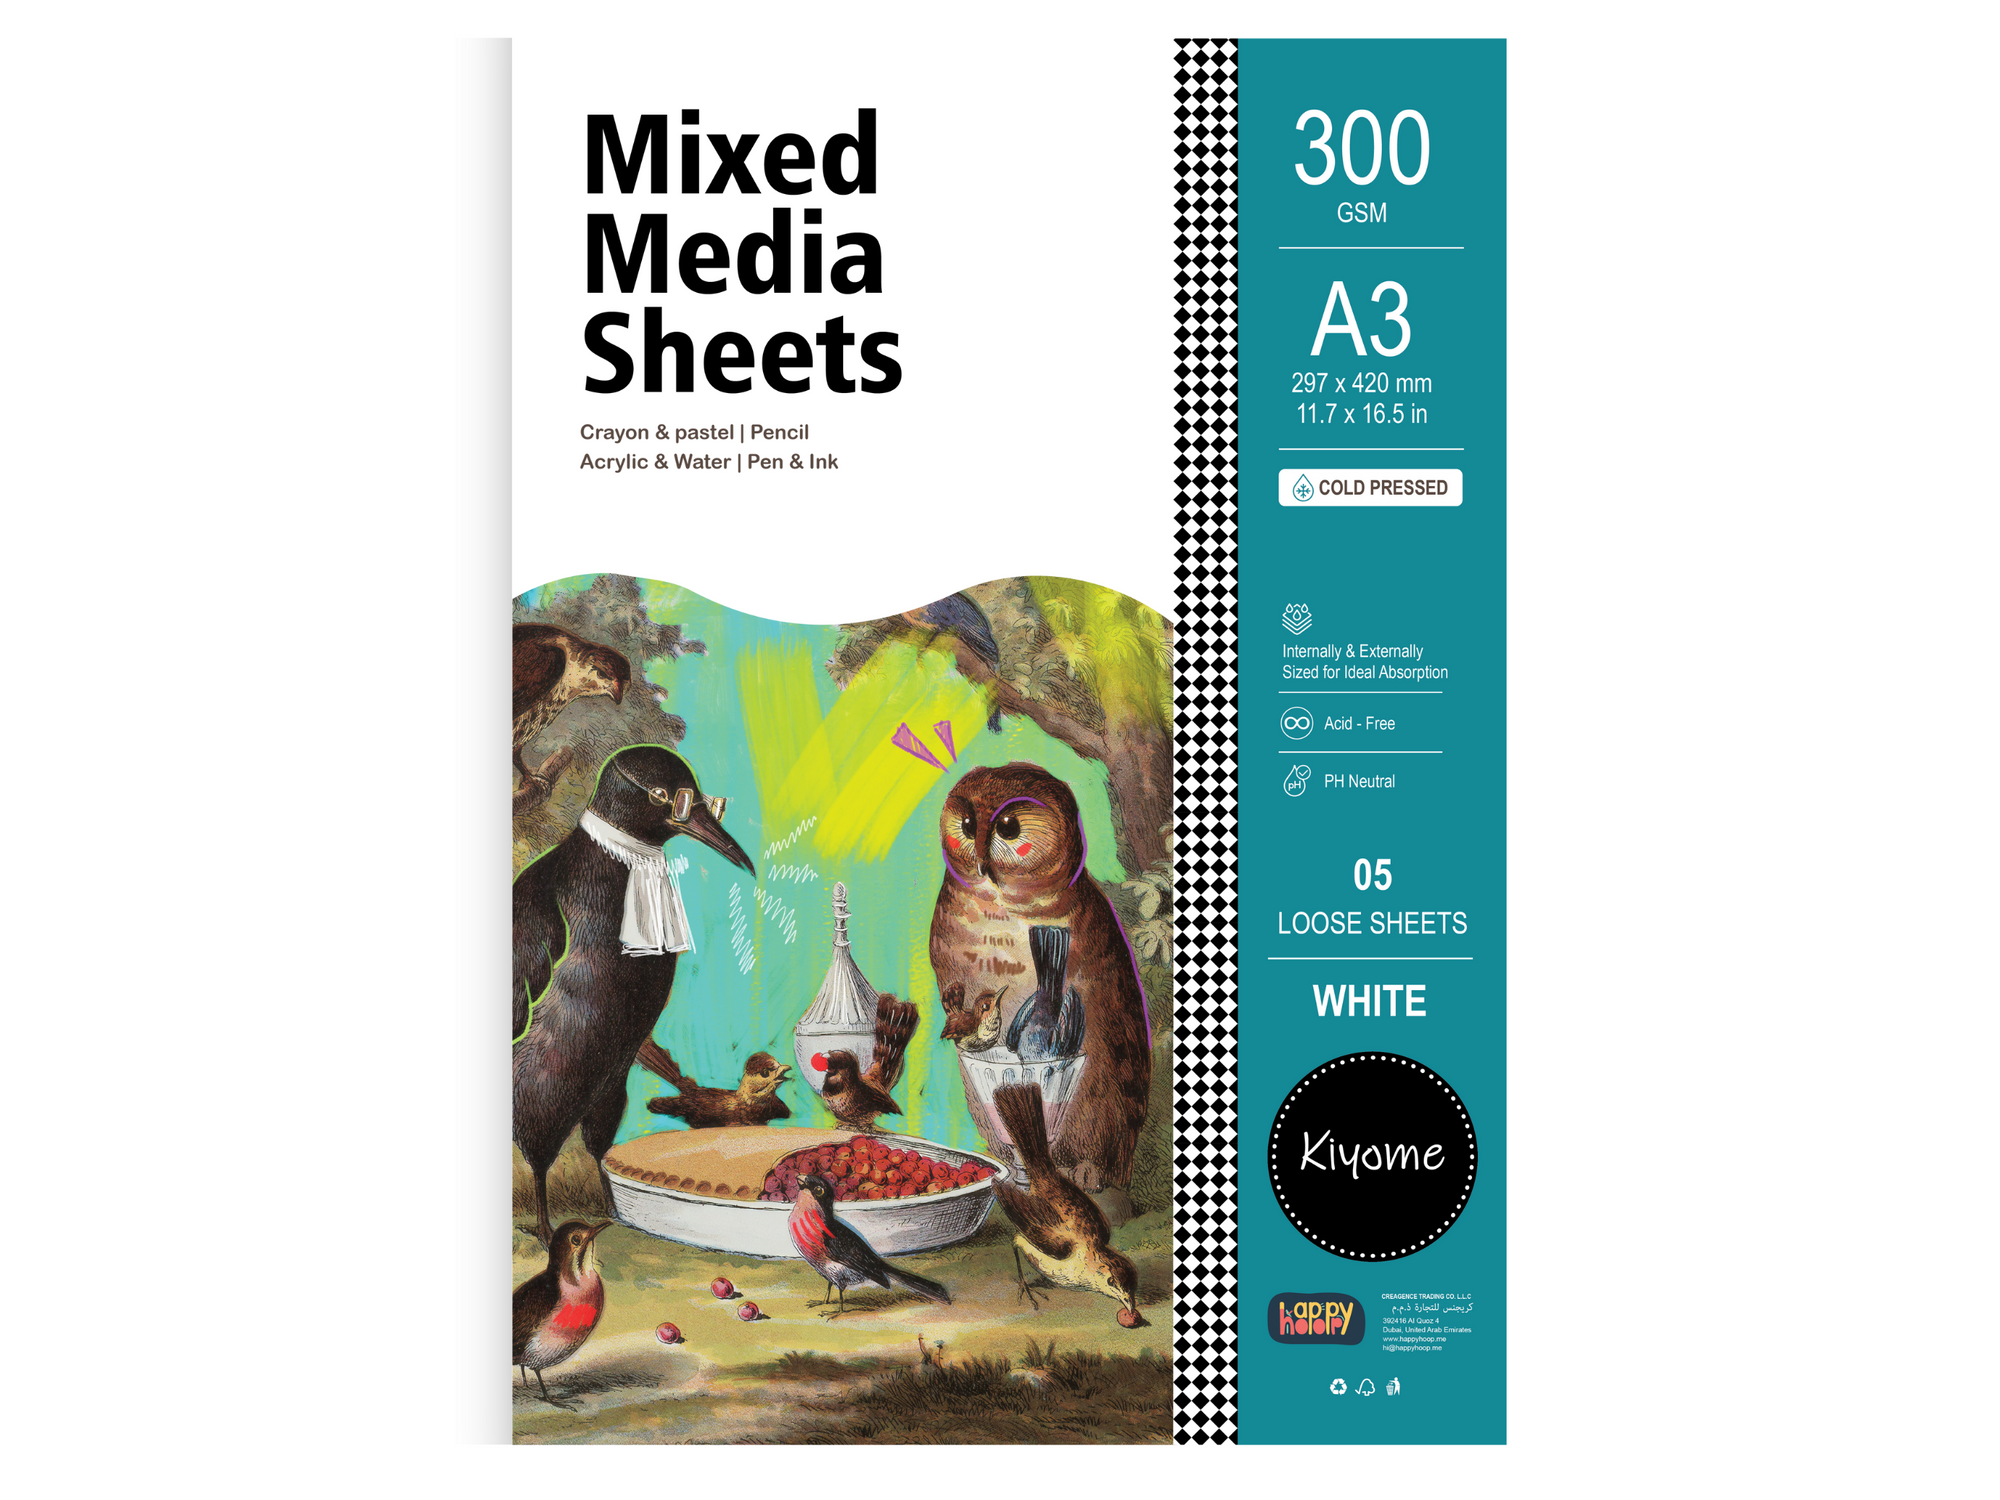 Kiyome Mixed Media Sheets | 300 GSM | A5 | 40 Sheets